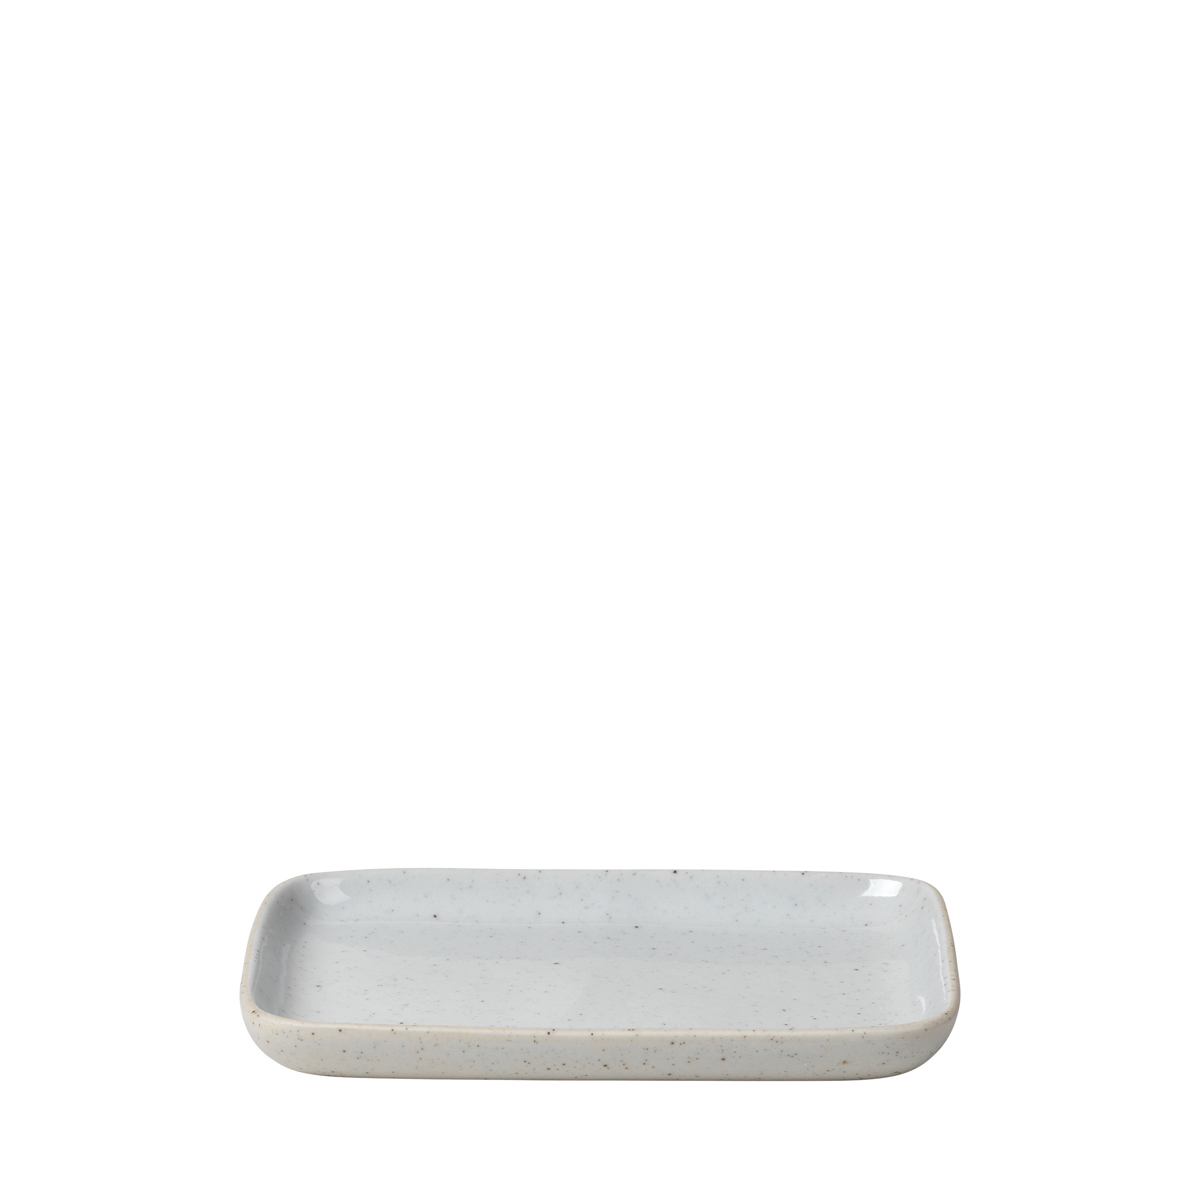 Snack Teller -SABLO- Cloud Size M. Material: Keramik. Von Blomus.